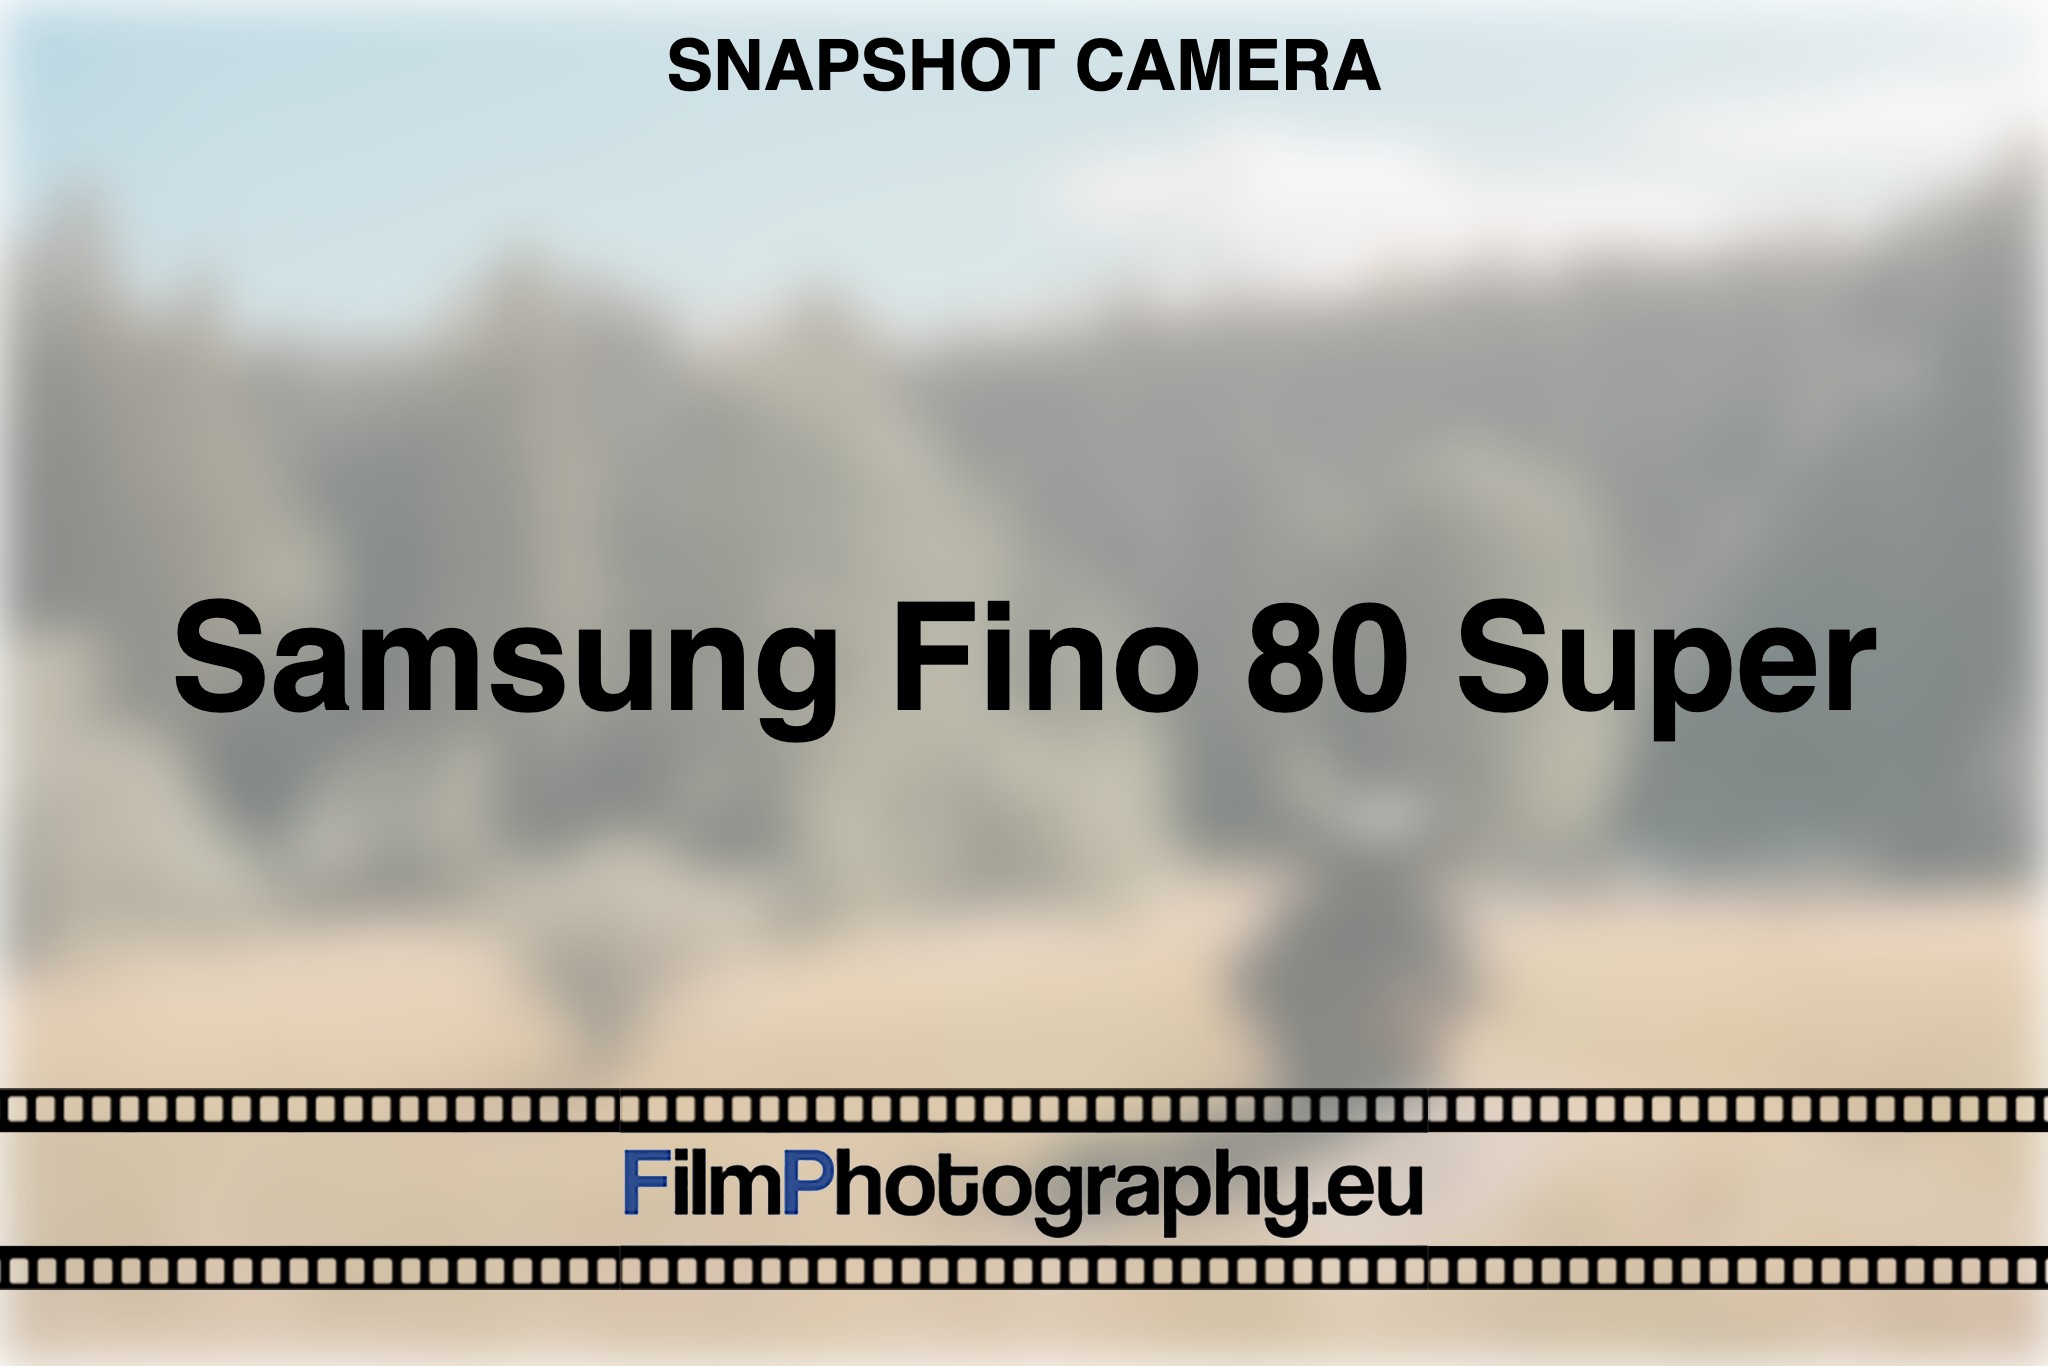 samsung-fino-80-super-snapshot-camera-bnv